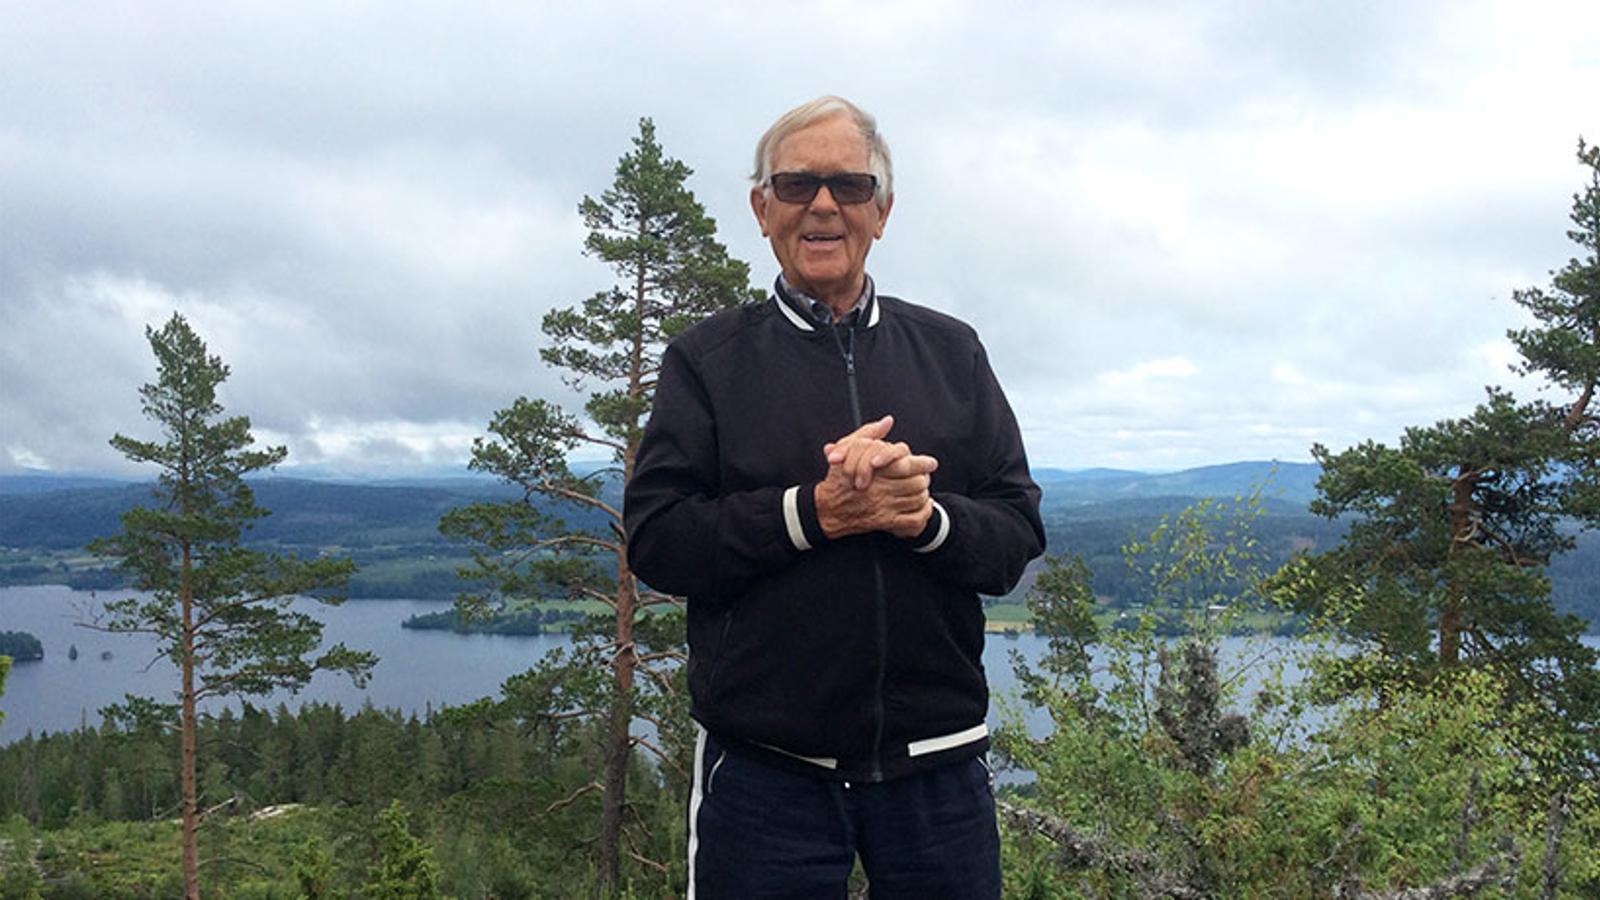 Porträttbild av Bengt Johansson. Han står utomhus med knutna händer och med blicken i kameran. Bakom honom syns skog och en sjö.